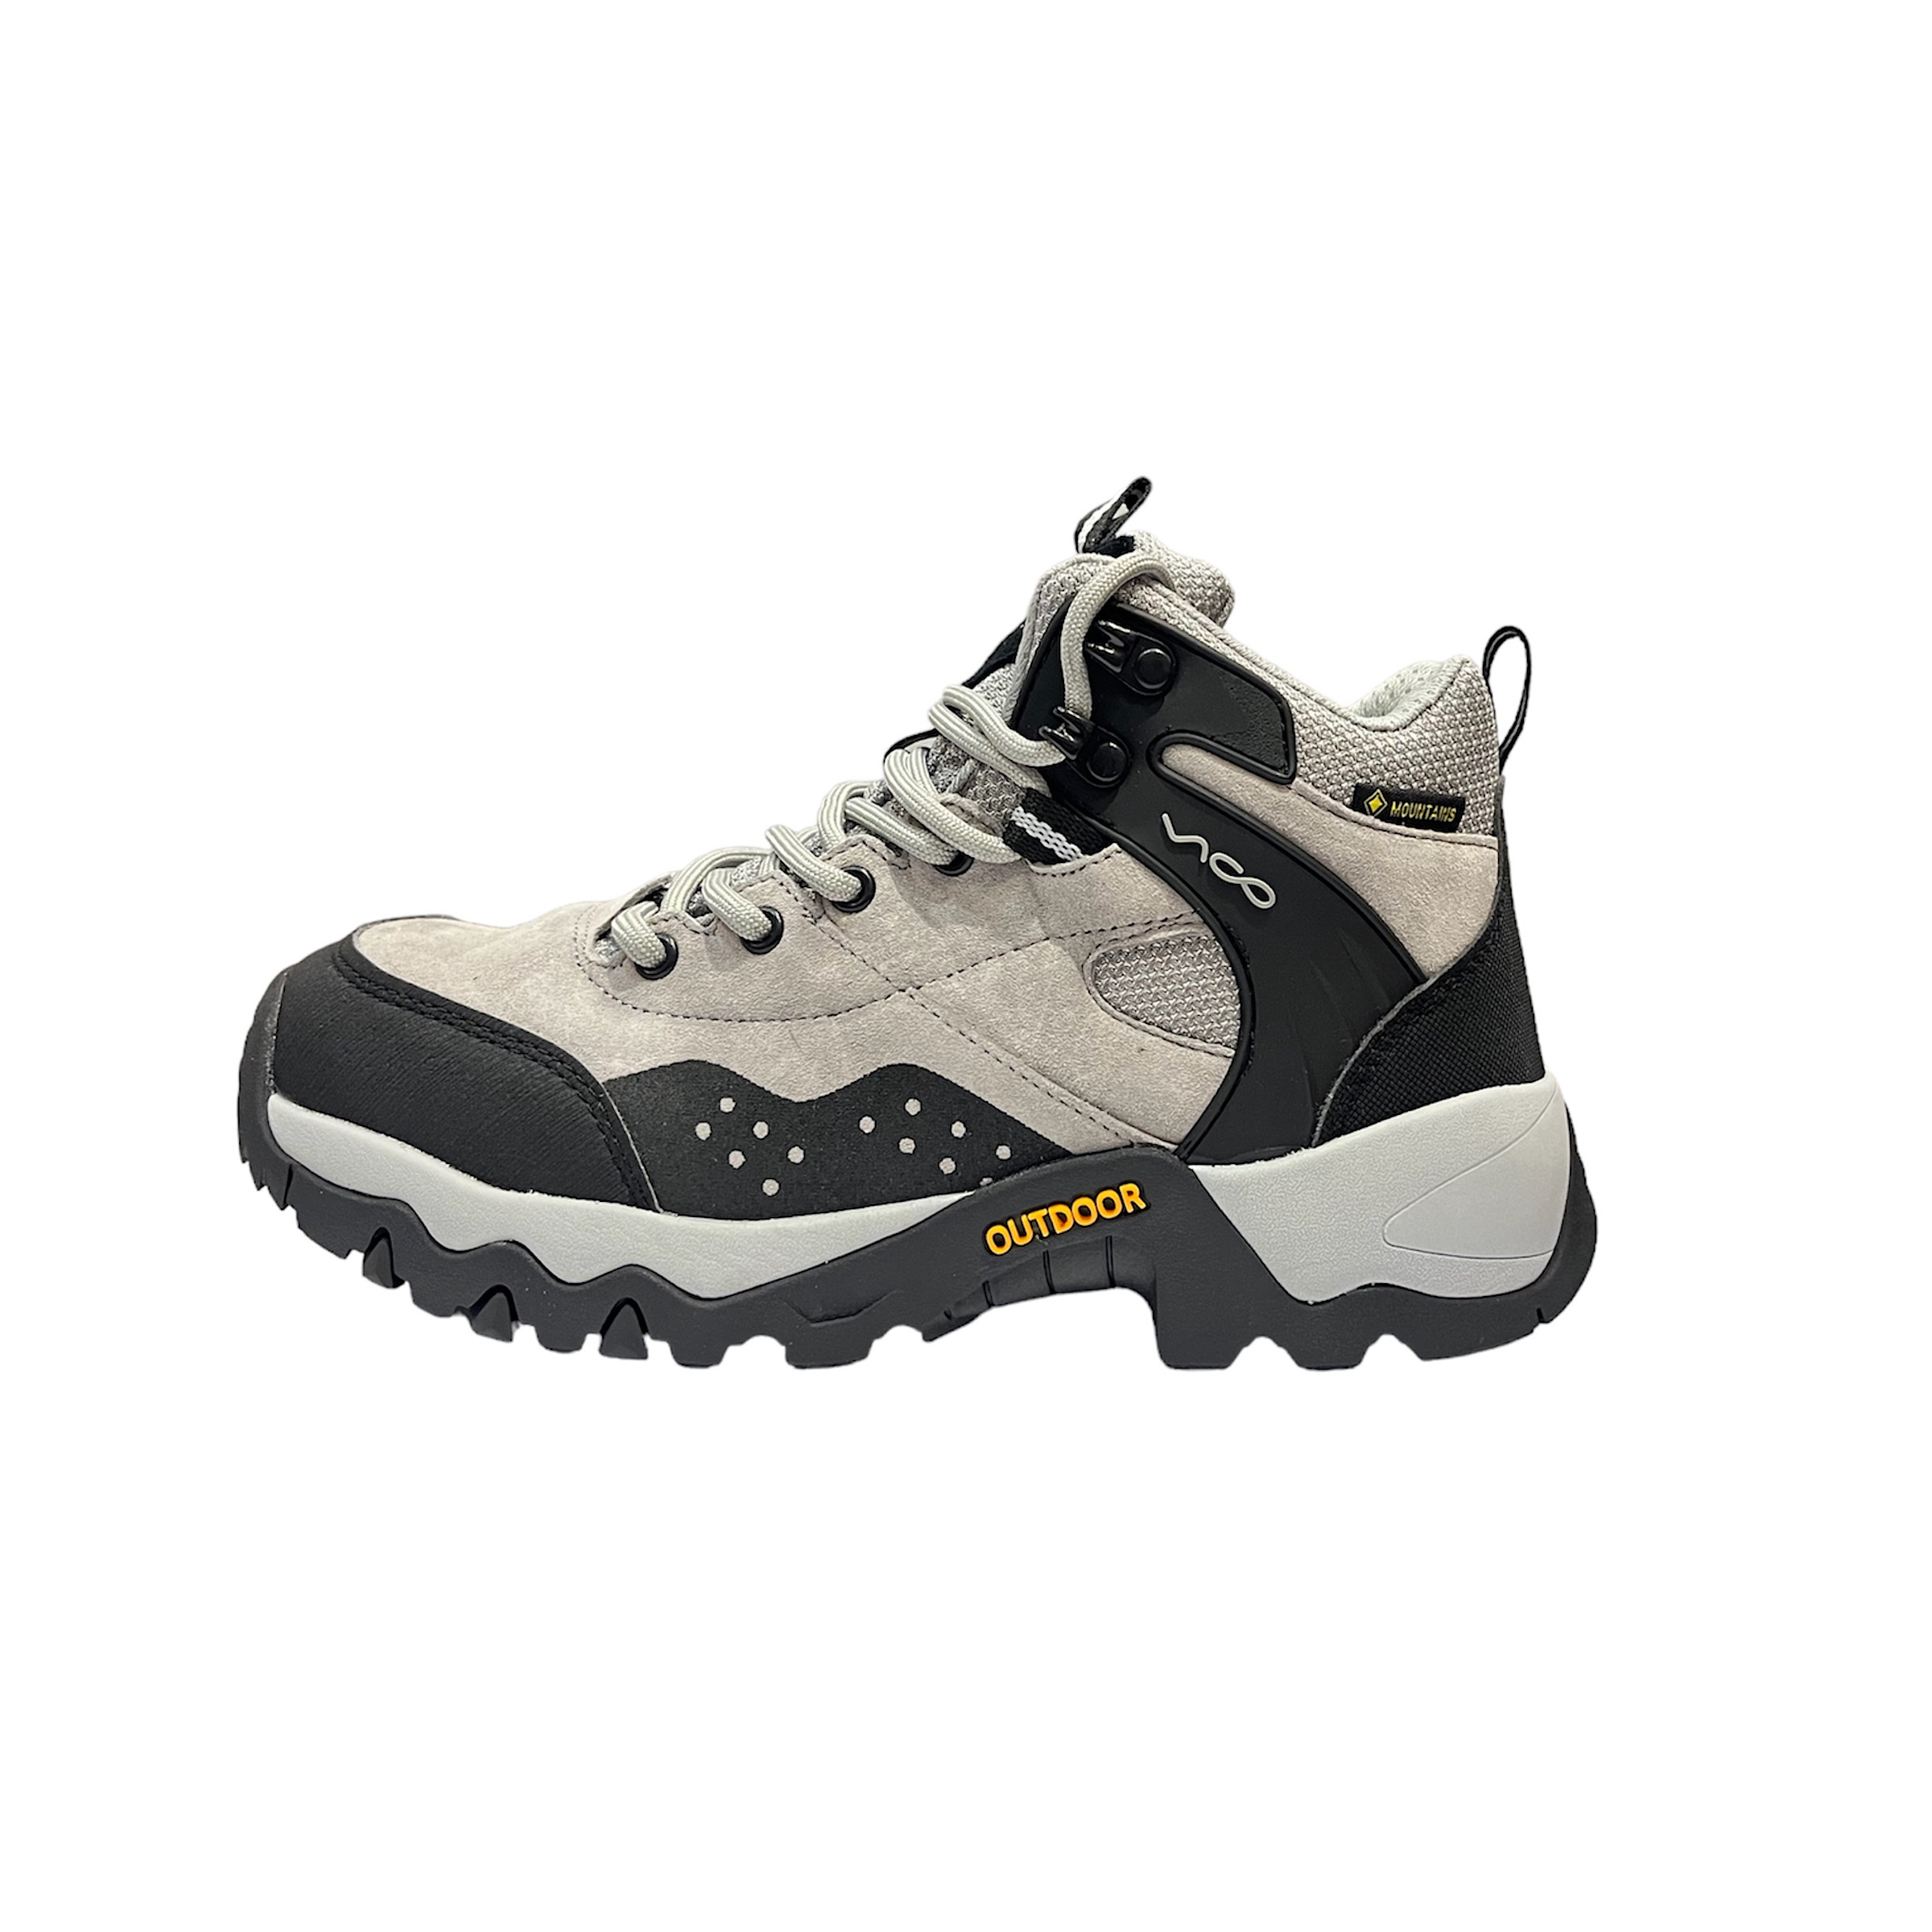 نکته خرید - قیمت روز کفش کوهنوردی مردانه ویکو مدل 008 خرید